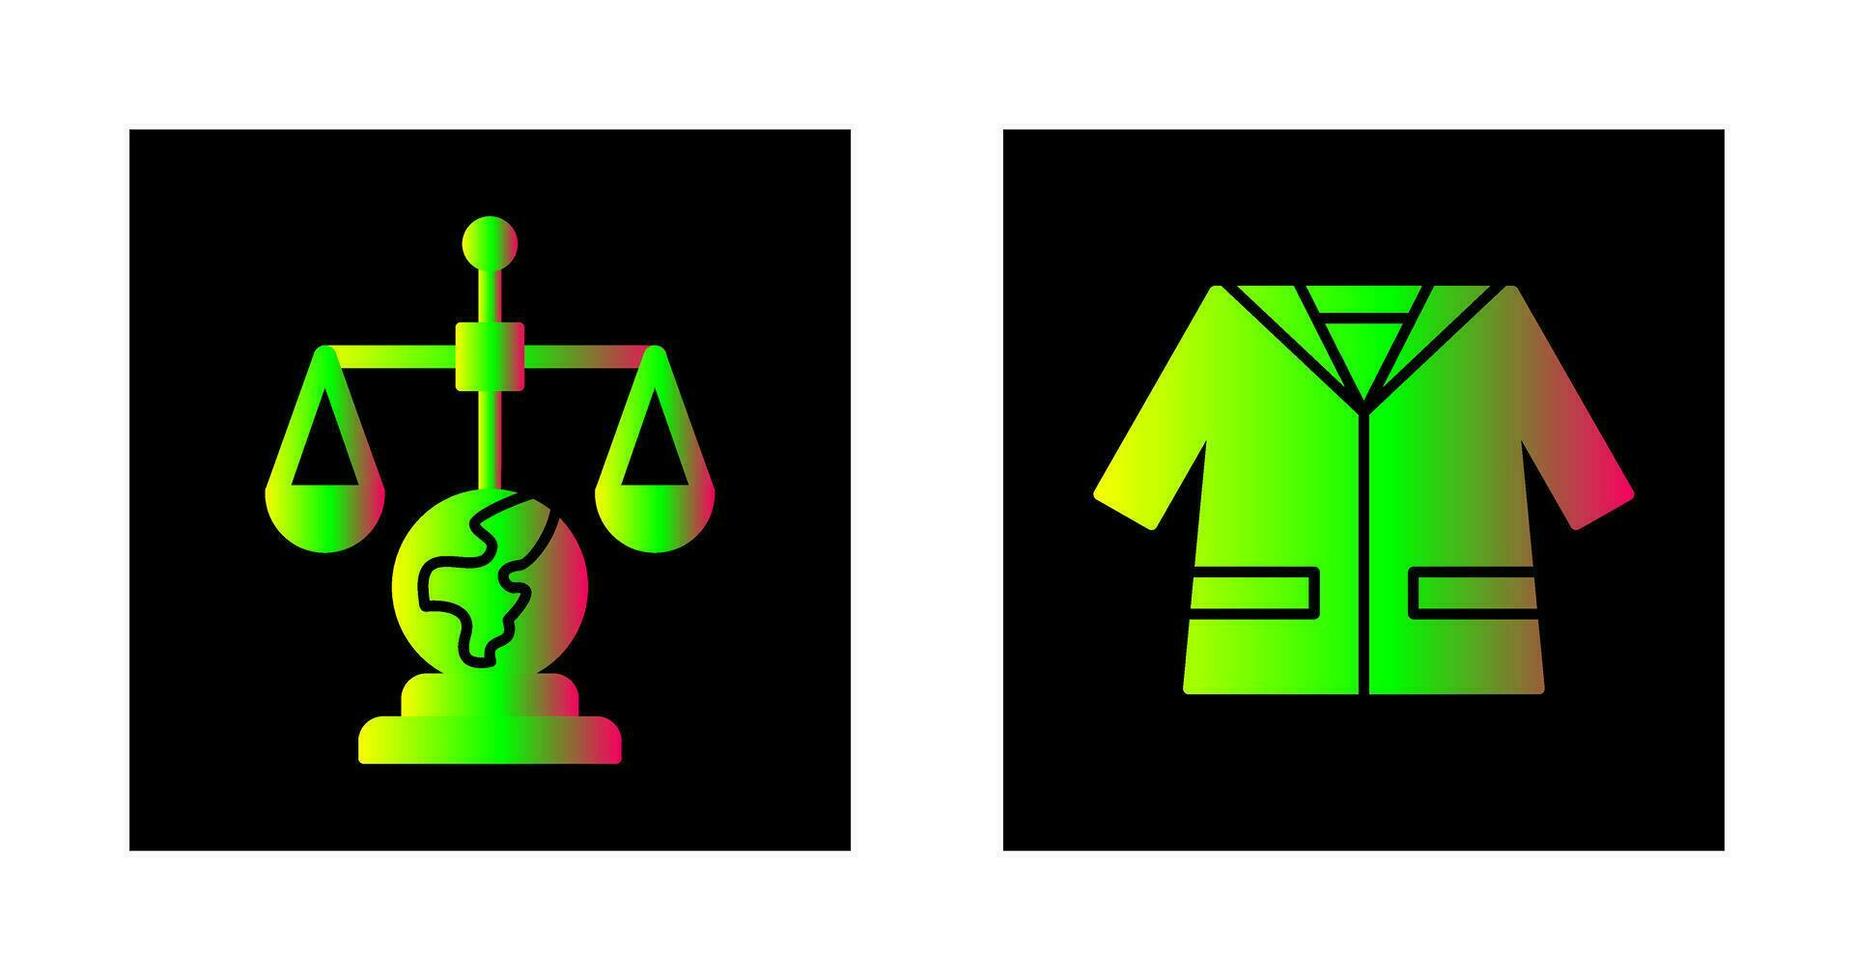 internacional ley y traje icono vector